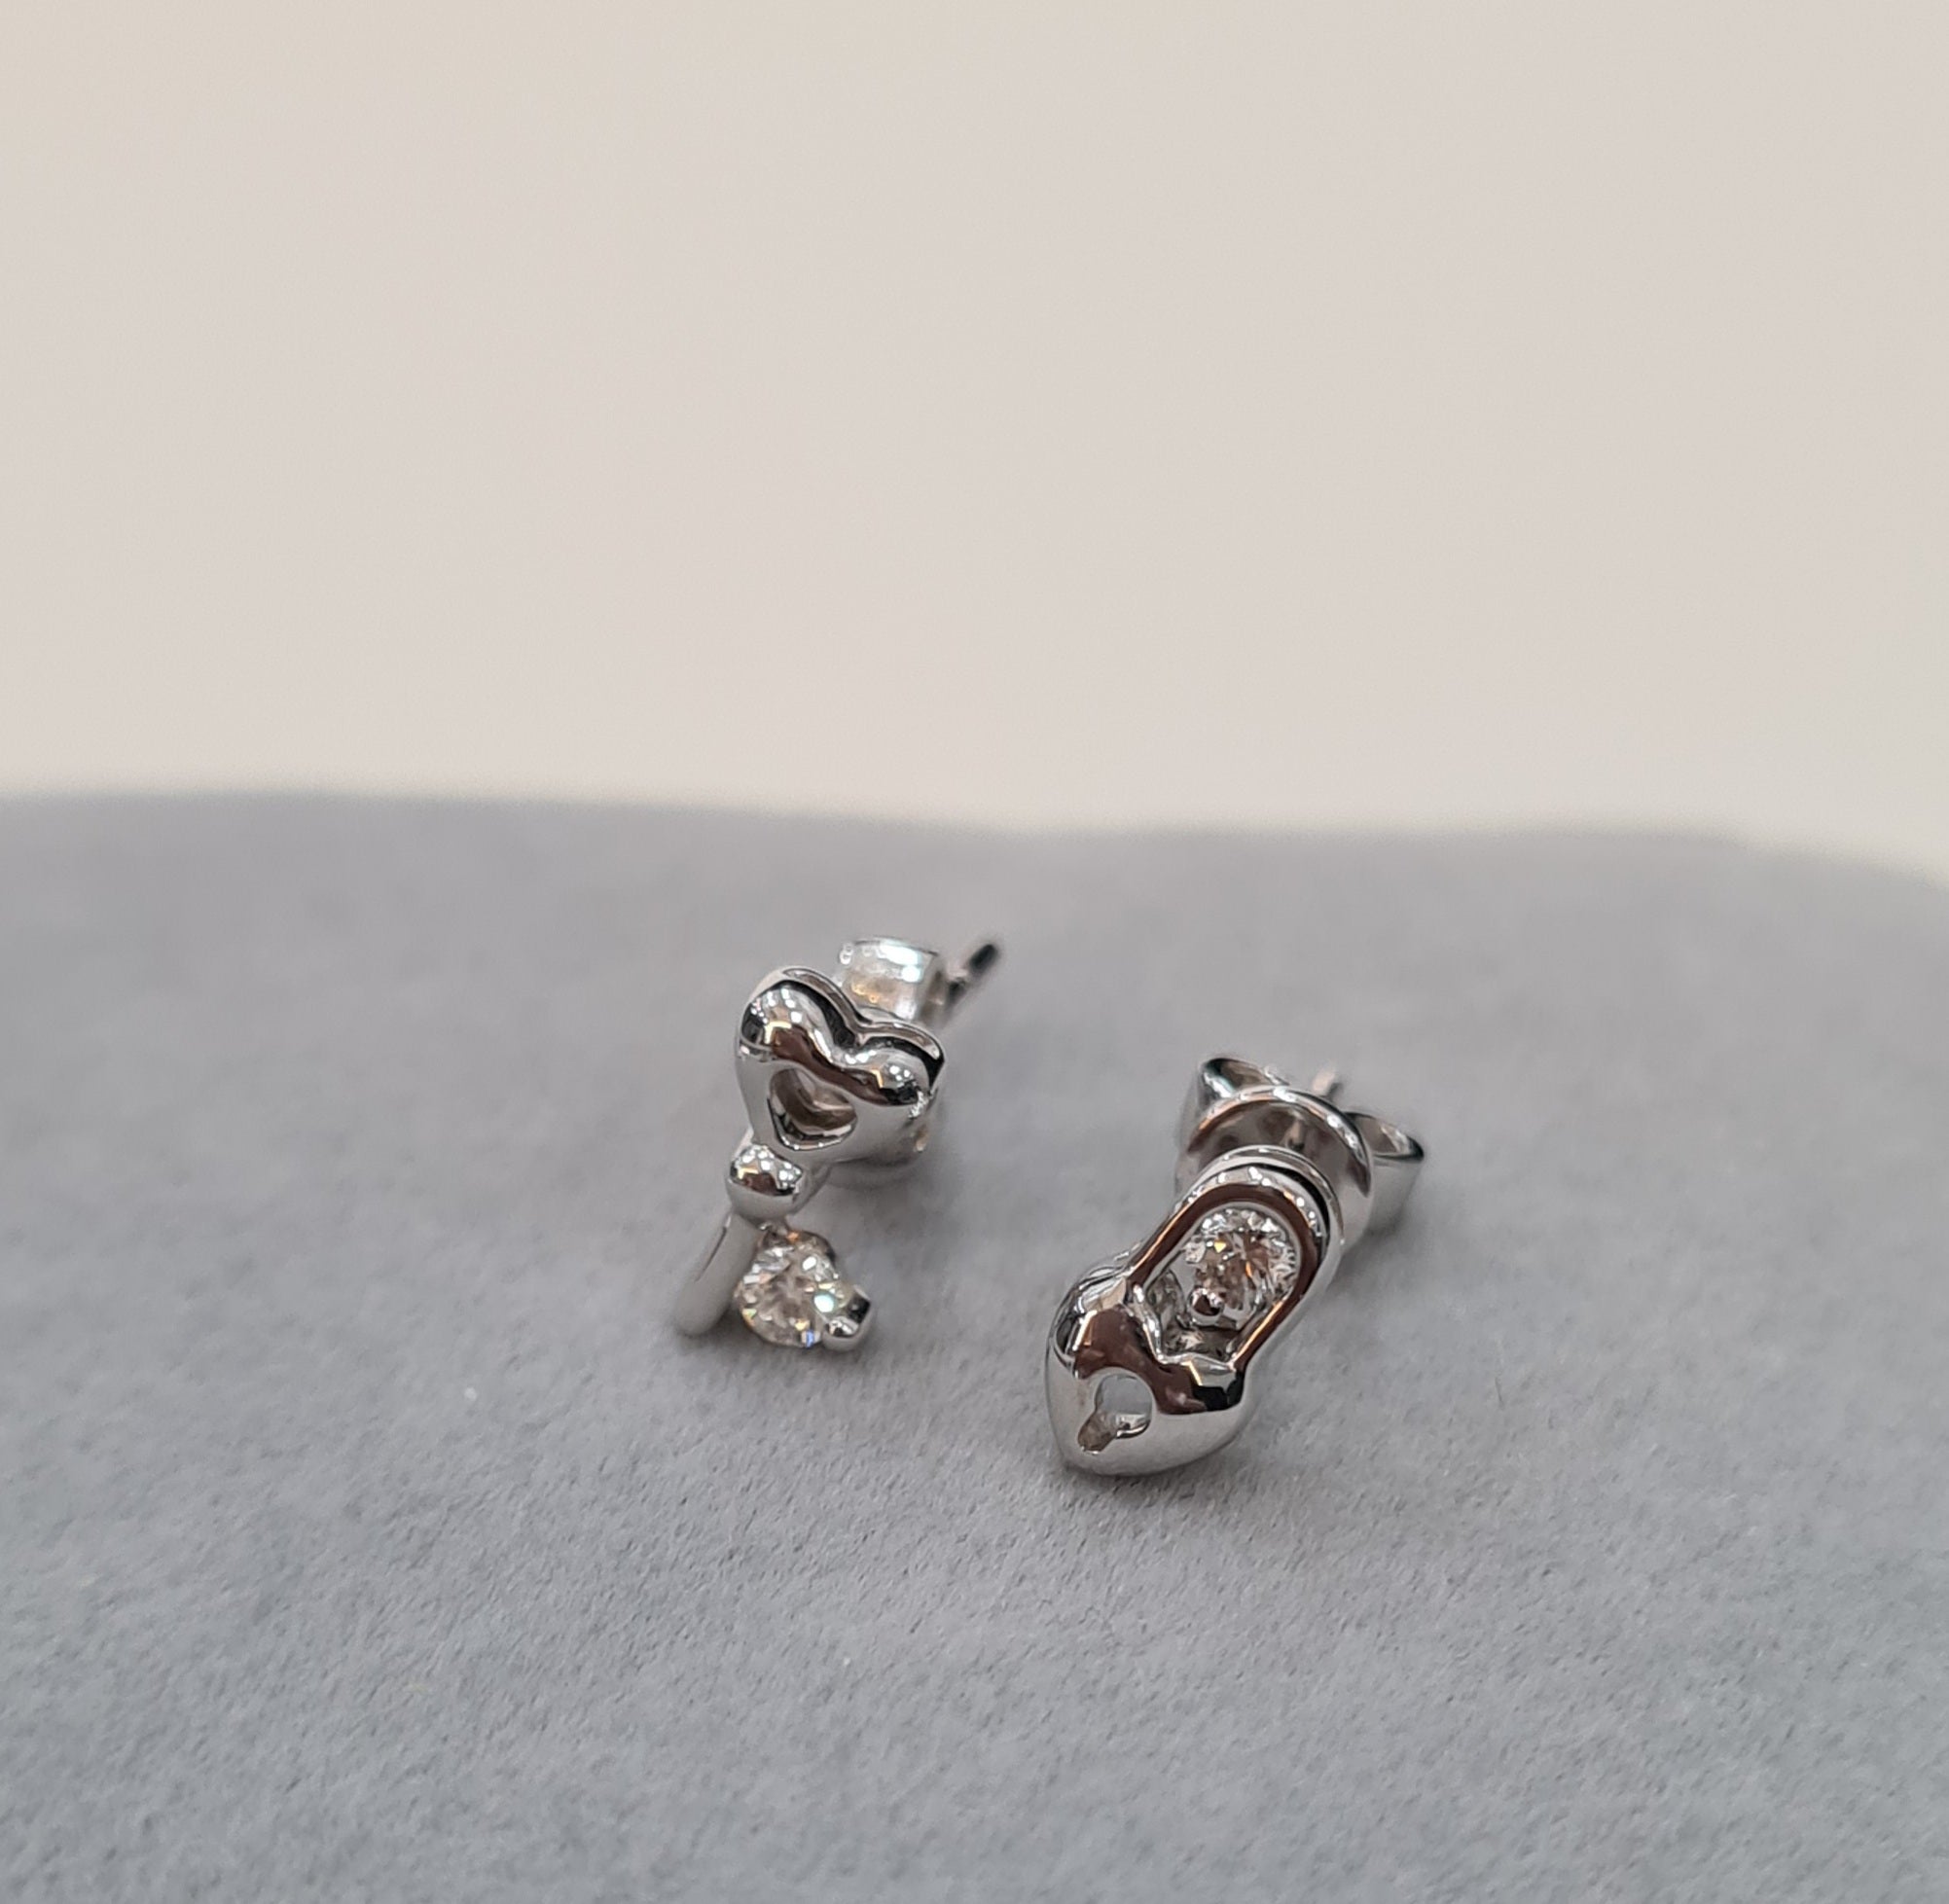 Unique key & lock Diamond Earrings